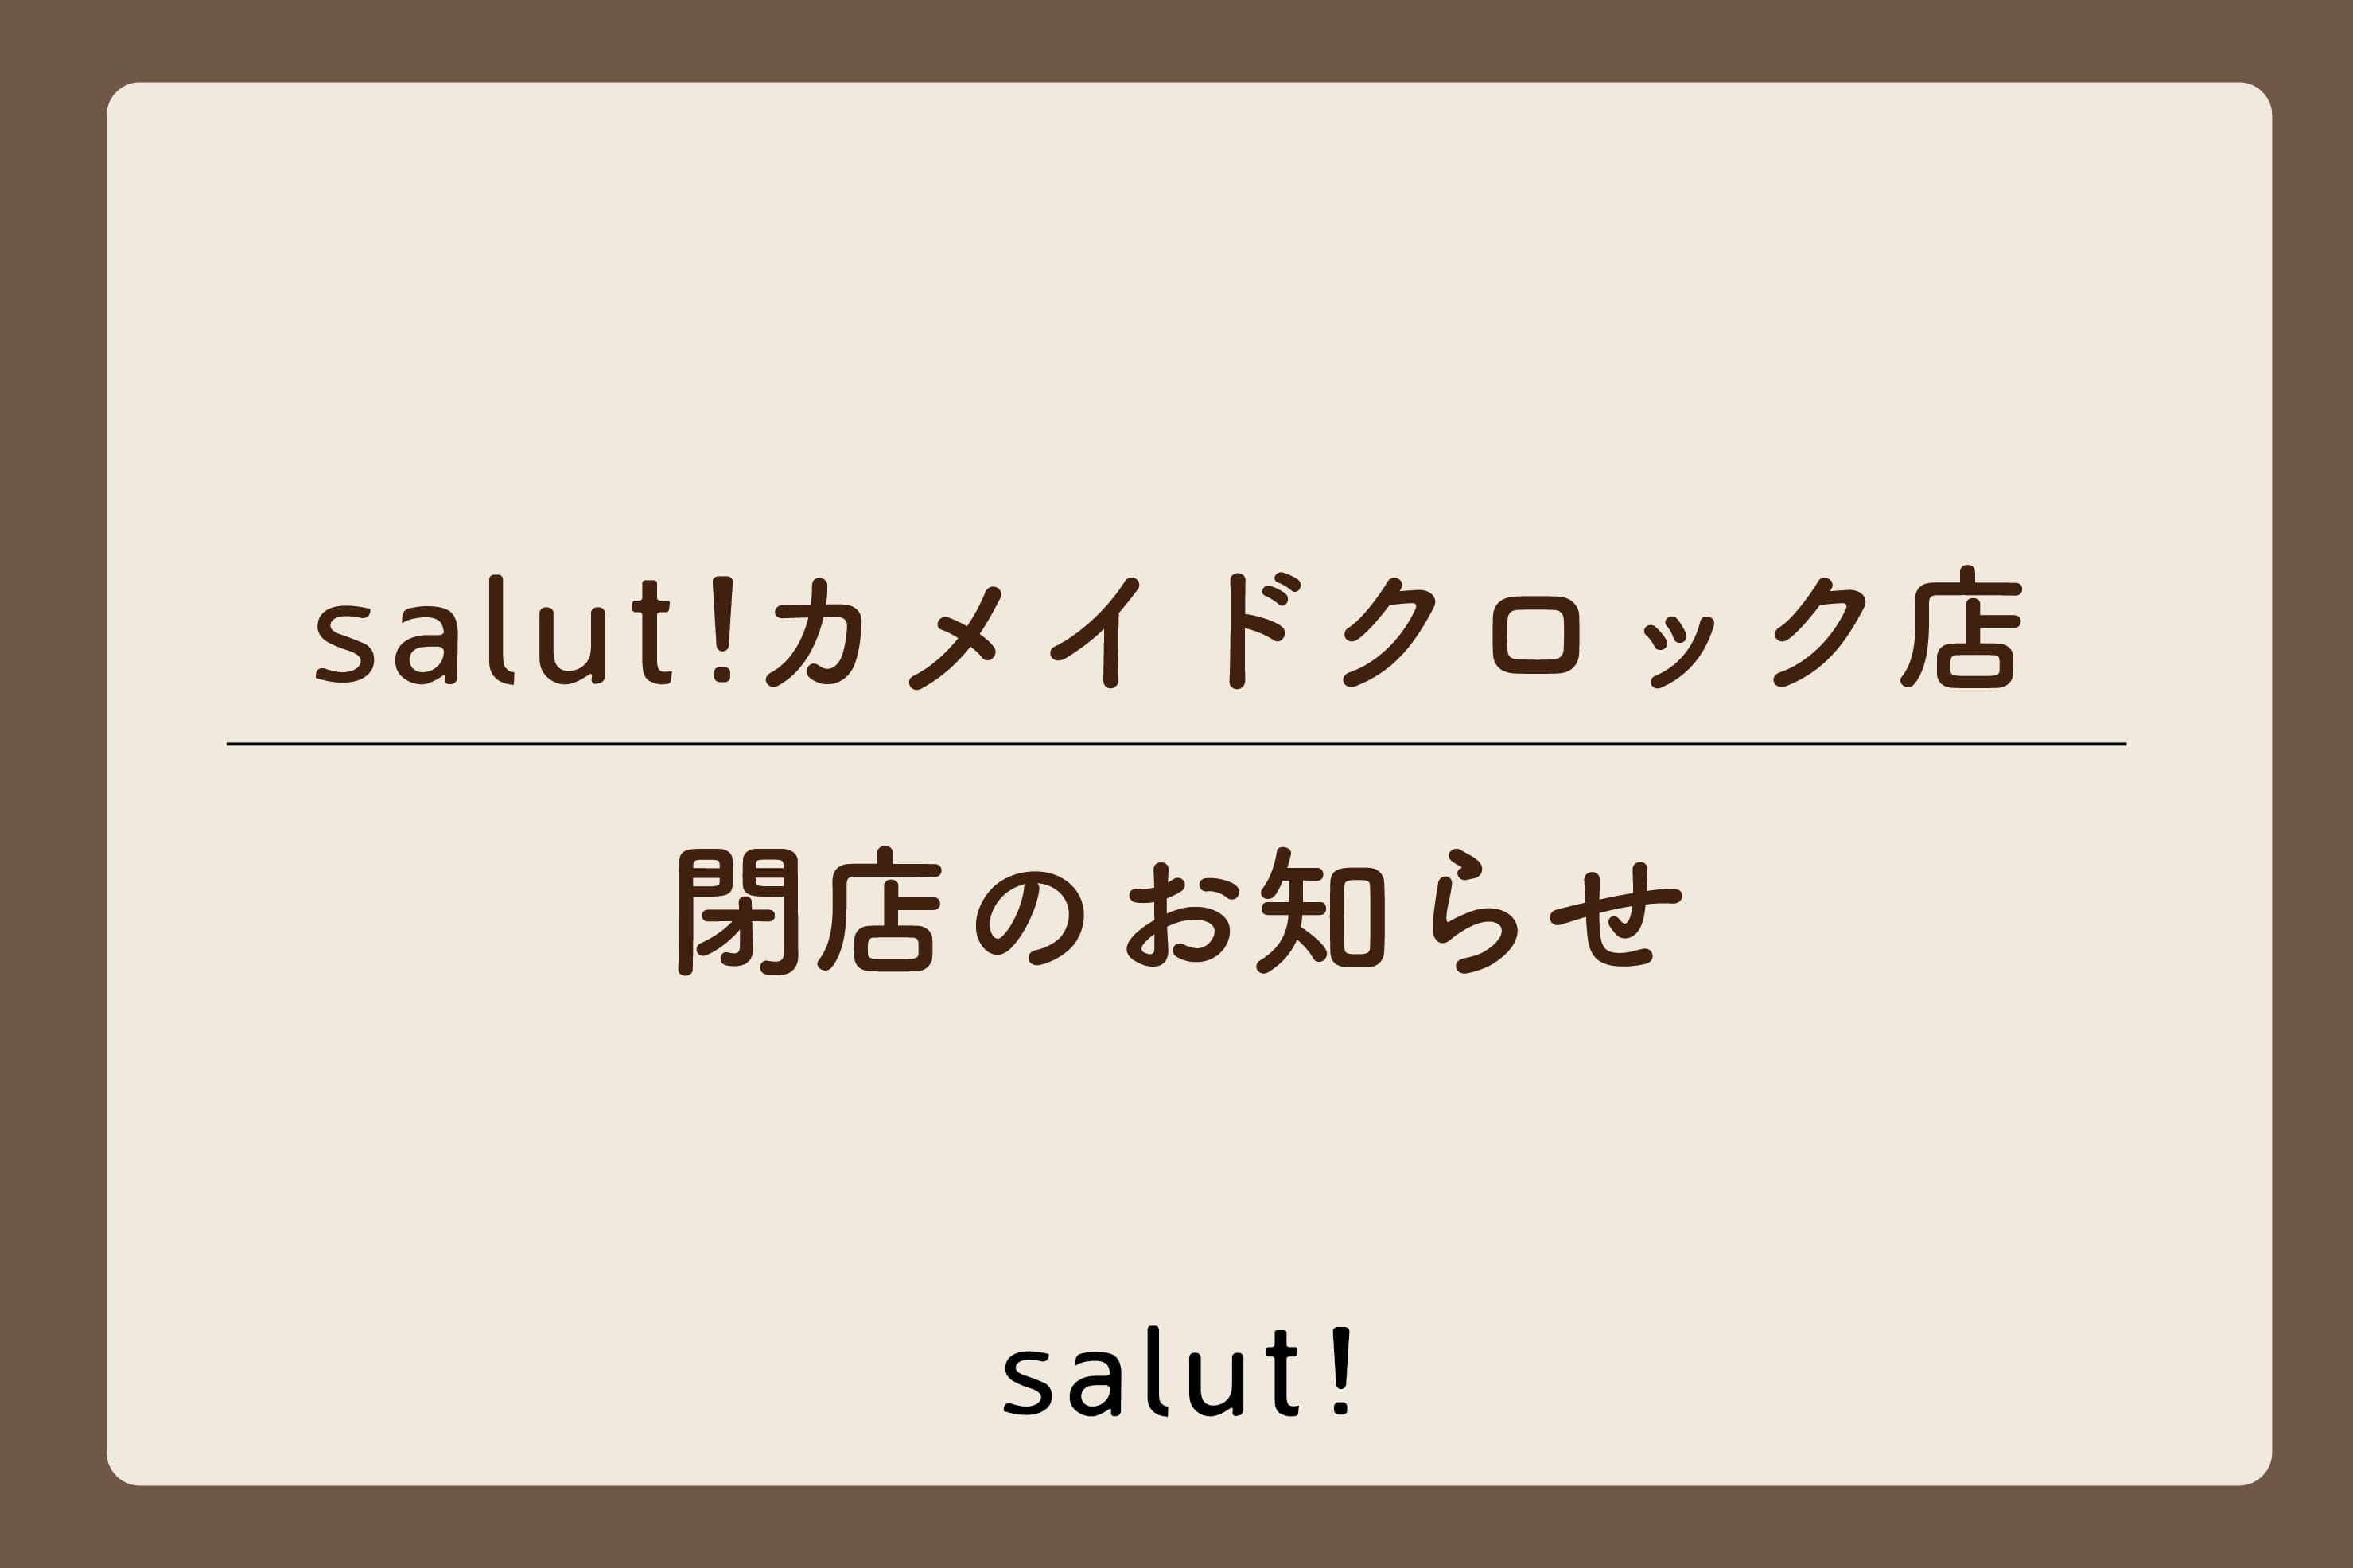 salut! 【閉店のお知らせ】salut!カメイドクロック店